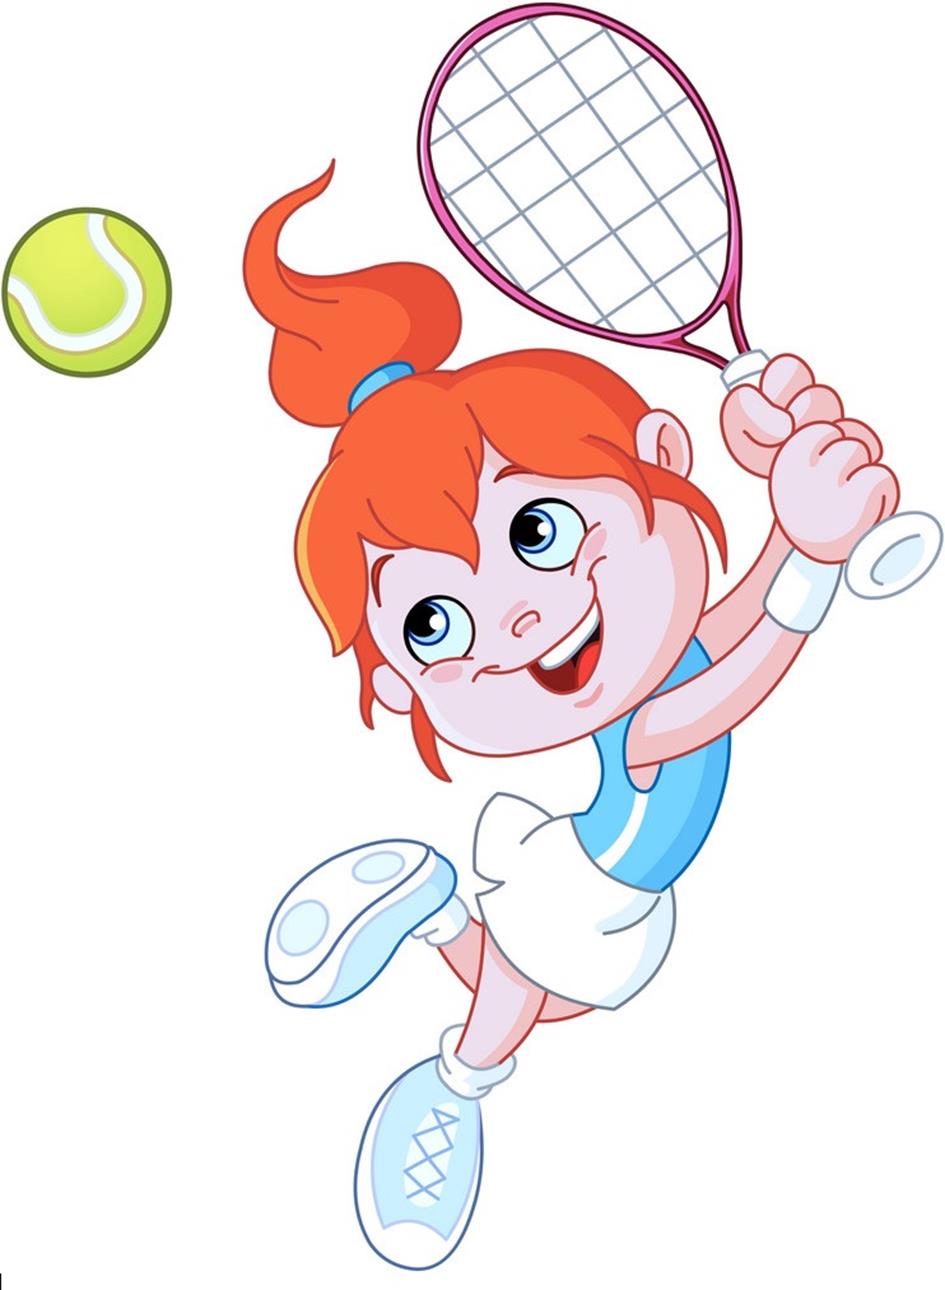 cartoon-tennis-player-vector-544860 1.jpg